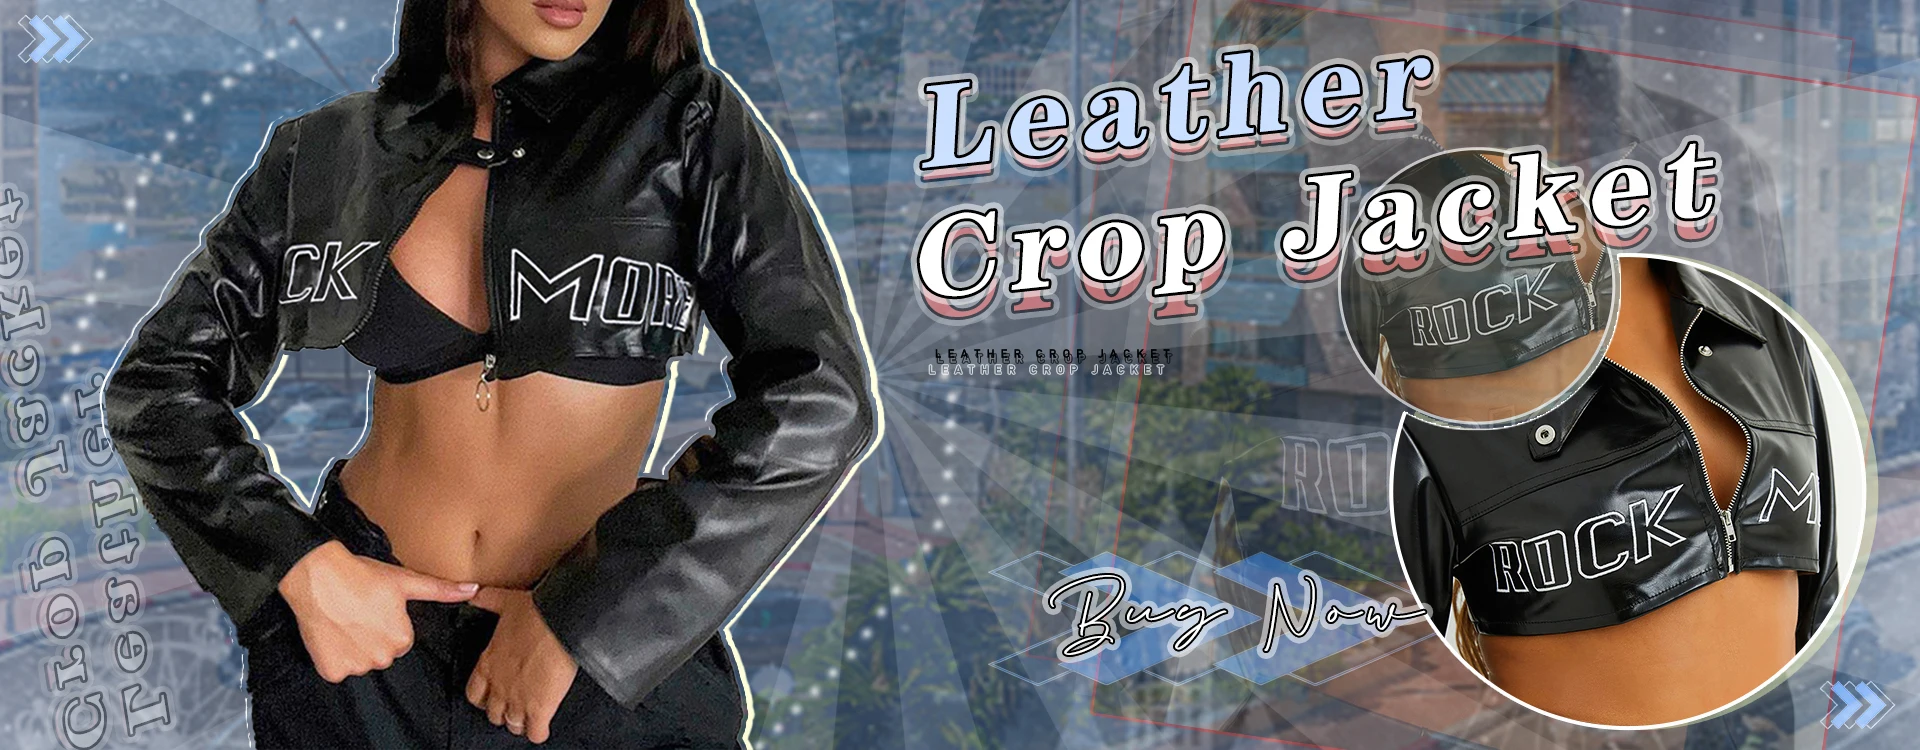 SUCHCUTE Moto&Biker Letter Print Women Outwear Leather PU Long Sleeve Zipper Jacket Goth Dark Streetwear Lapel Motorcycle Suit